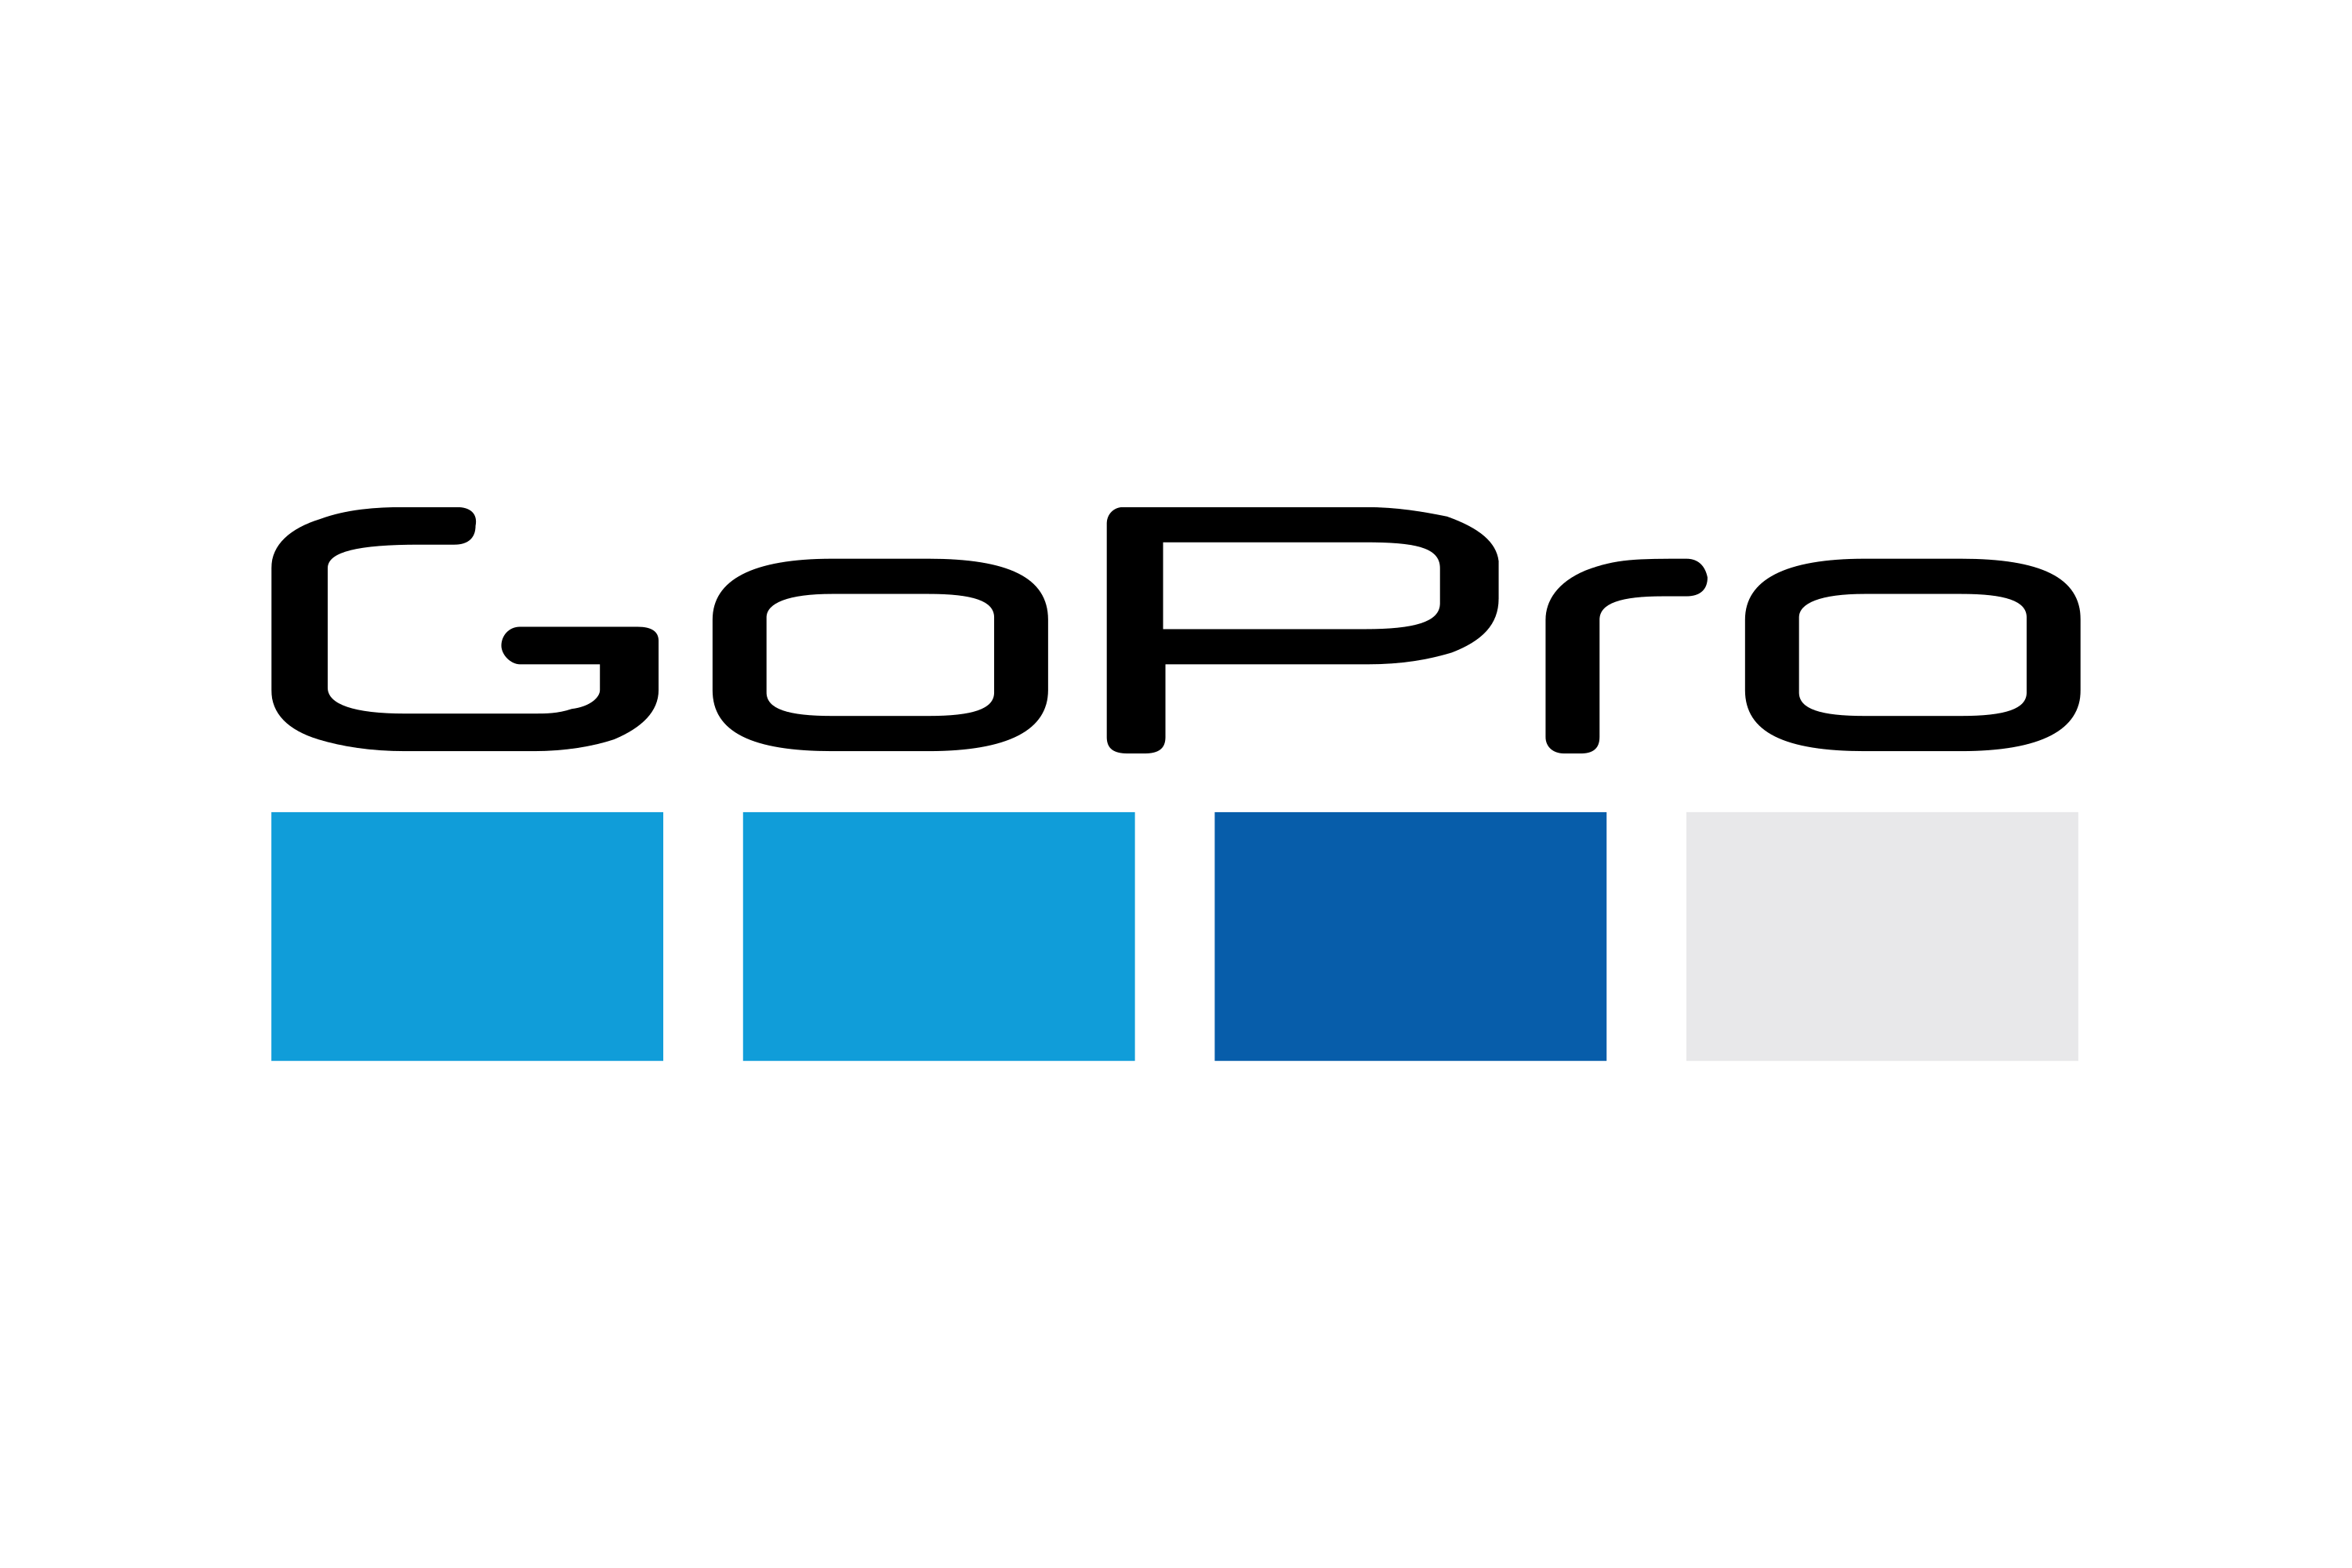 Download GoPro Logo in SVG Vector or PNG File Format - Logo.wine